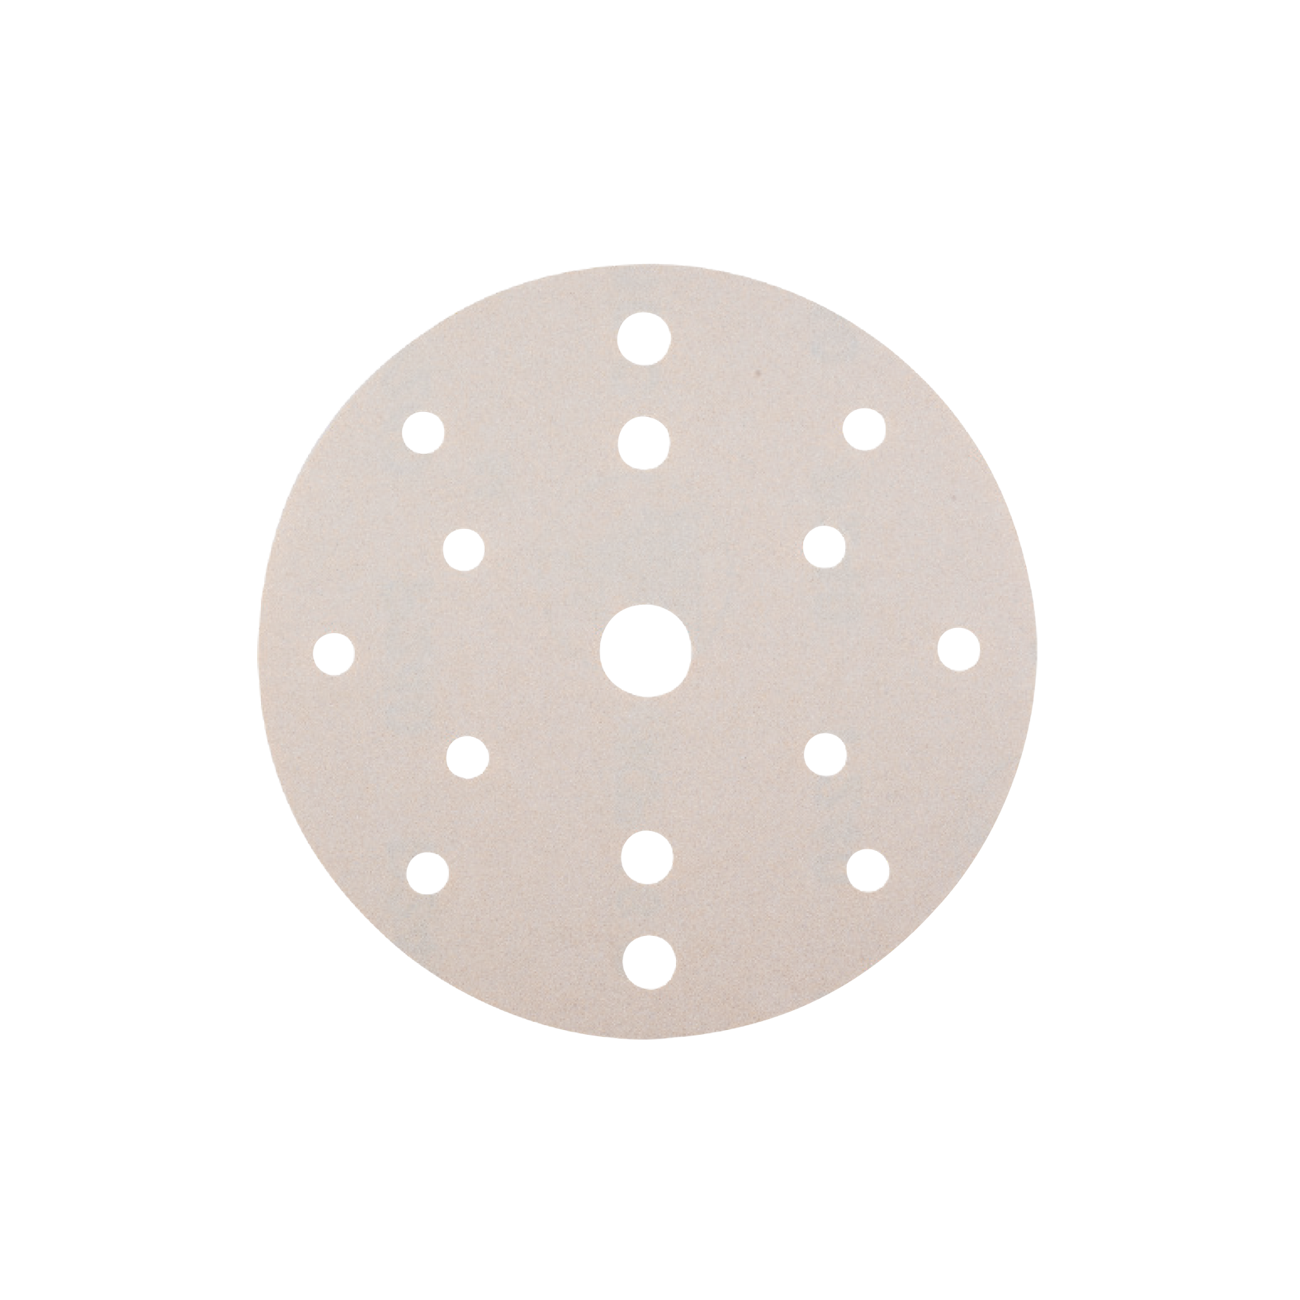 Disc din Hartie Abrazive pe Suport Velcro din Panza pentru Lemn - Skp Velcro, R 150, 8 + 6 + 1 Perforatii, Gr. 150